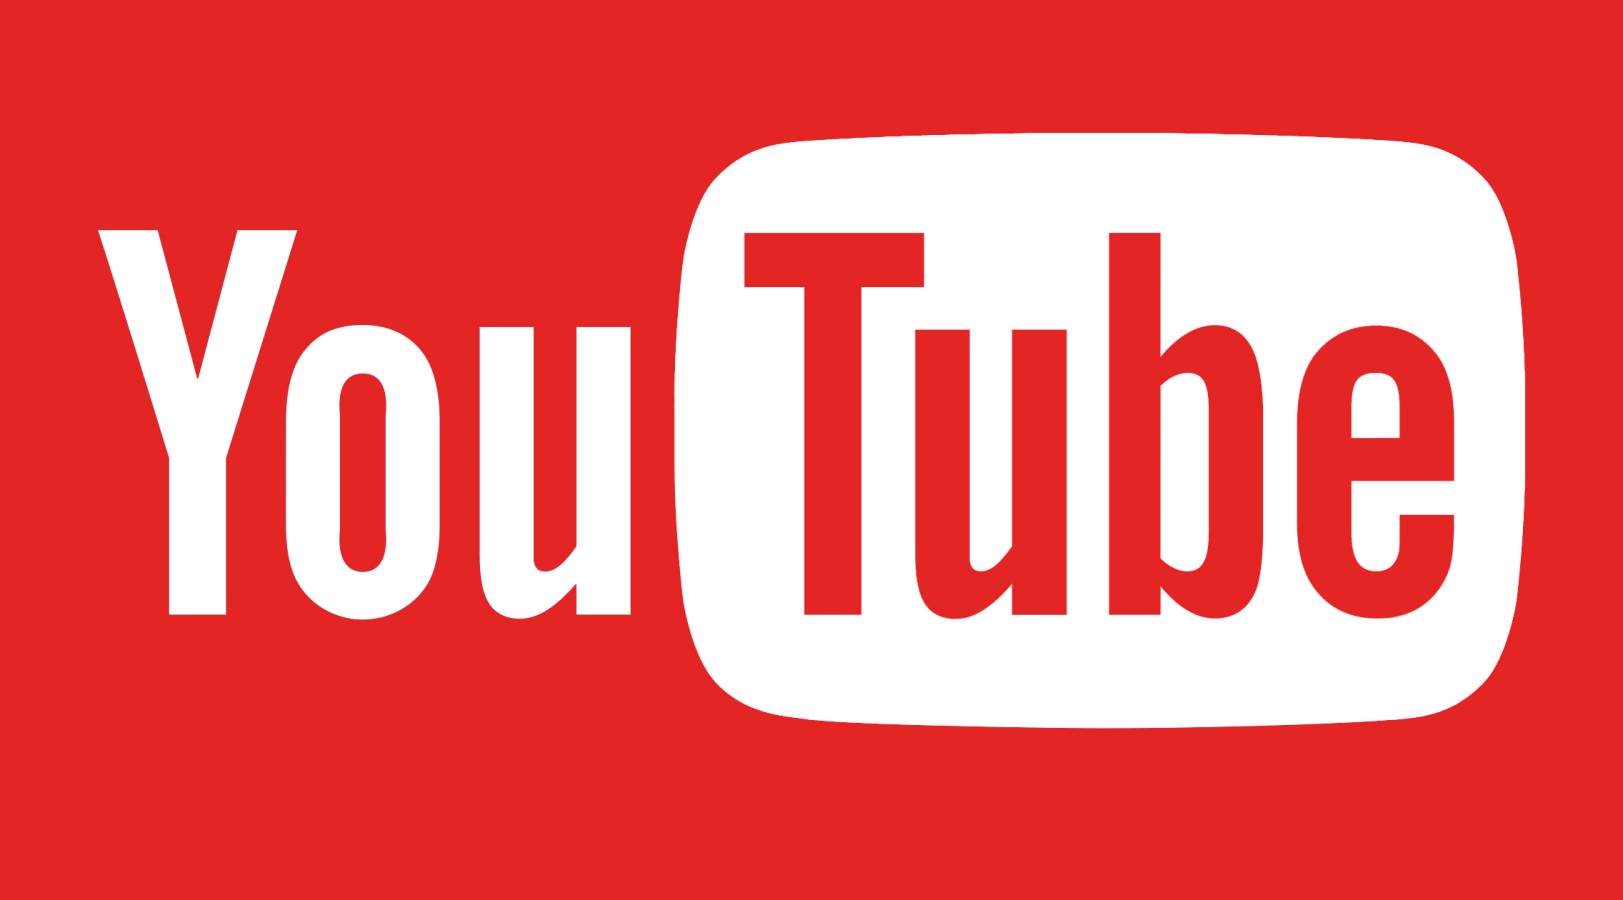 YouTube släppt uppdatering och ändringar som erbjuds i telefoner